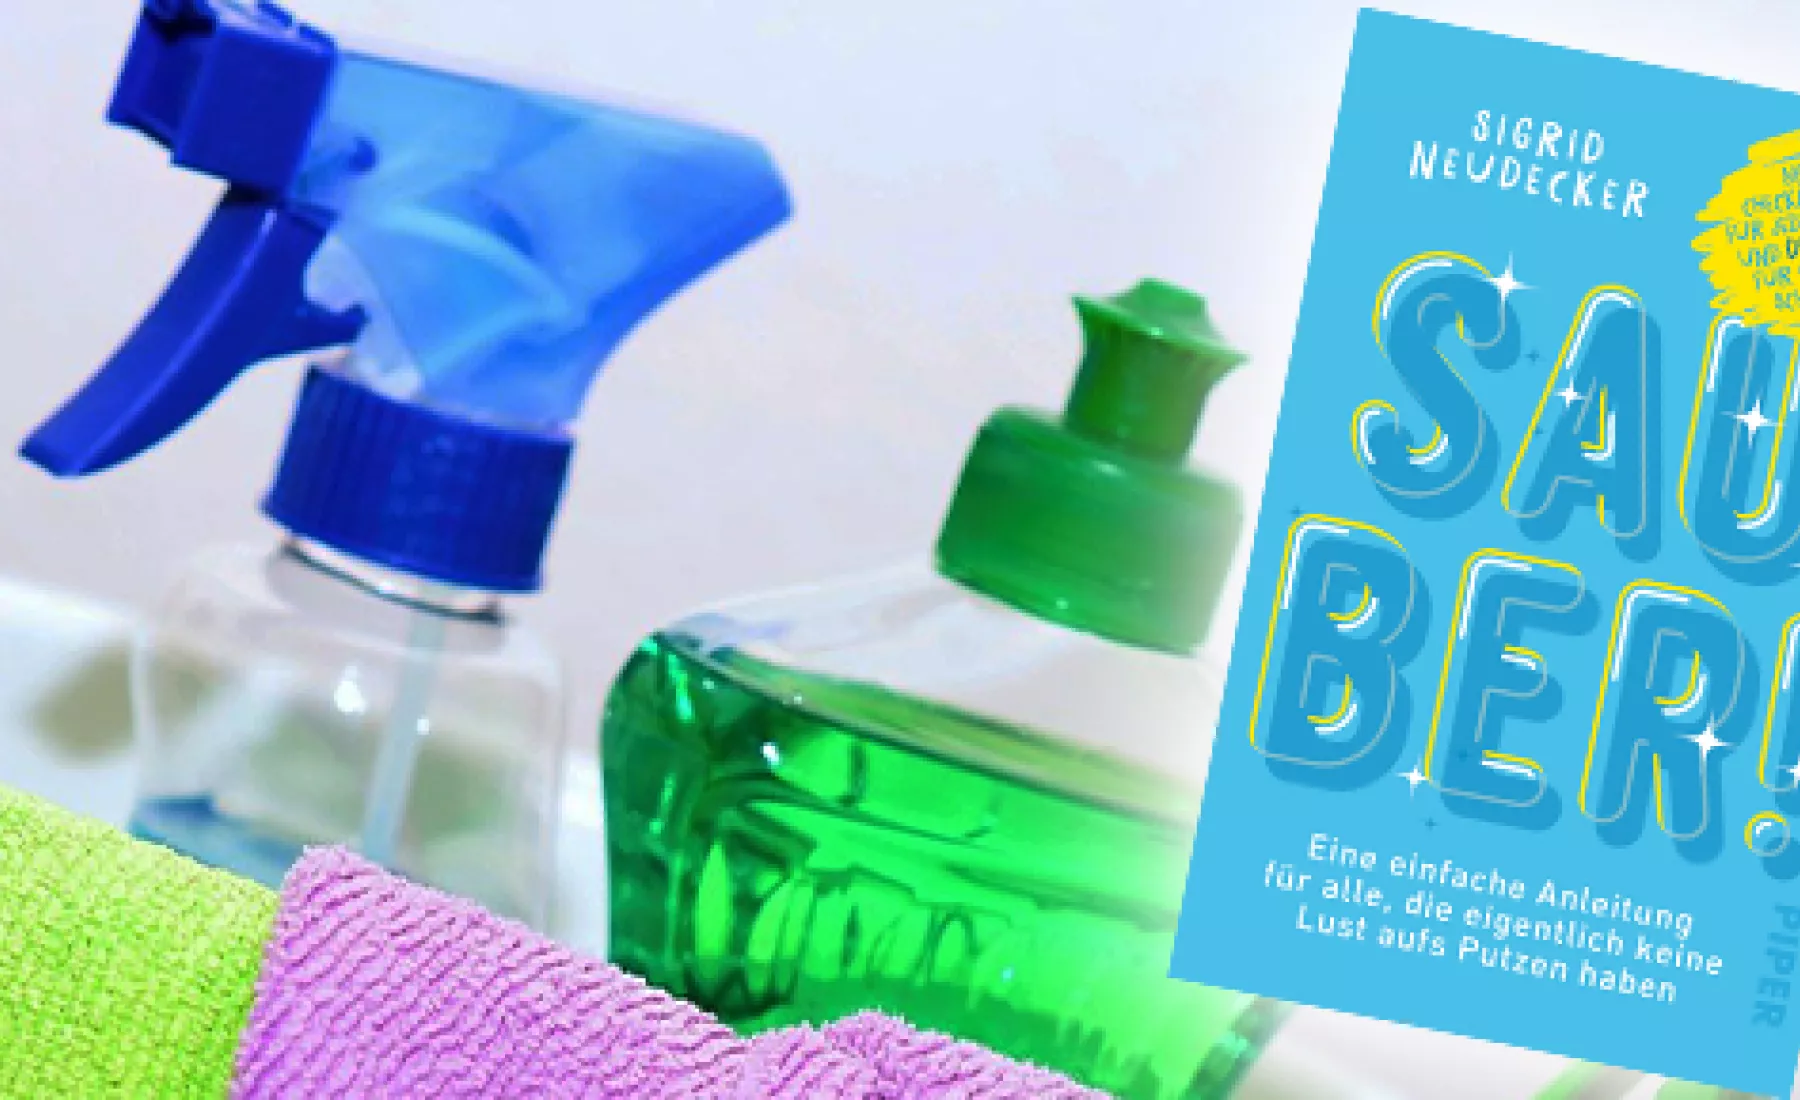 Buch Sauber!: Eine einfache Anleitung für alle, die eigentlich keine Lust aufs Putzen haben